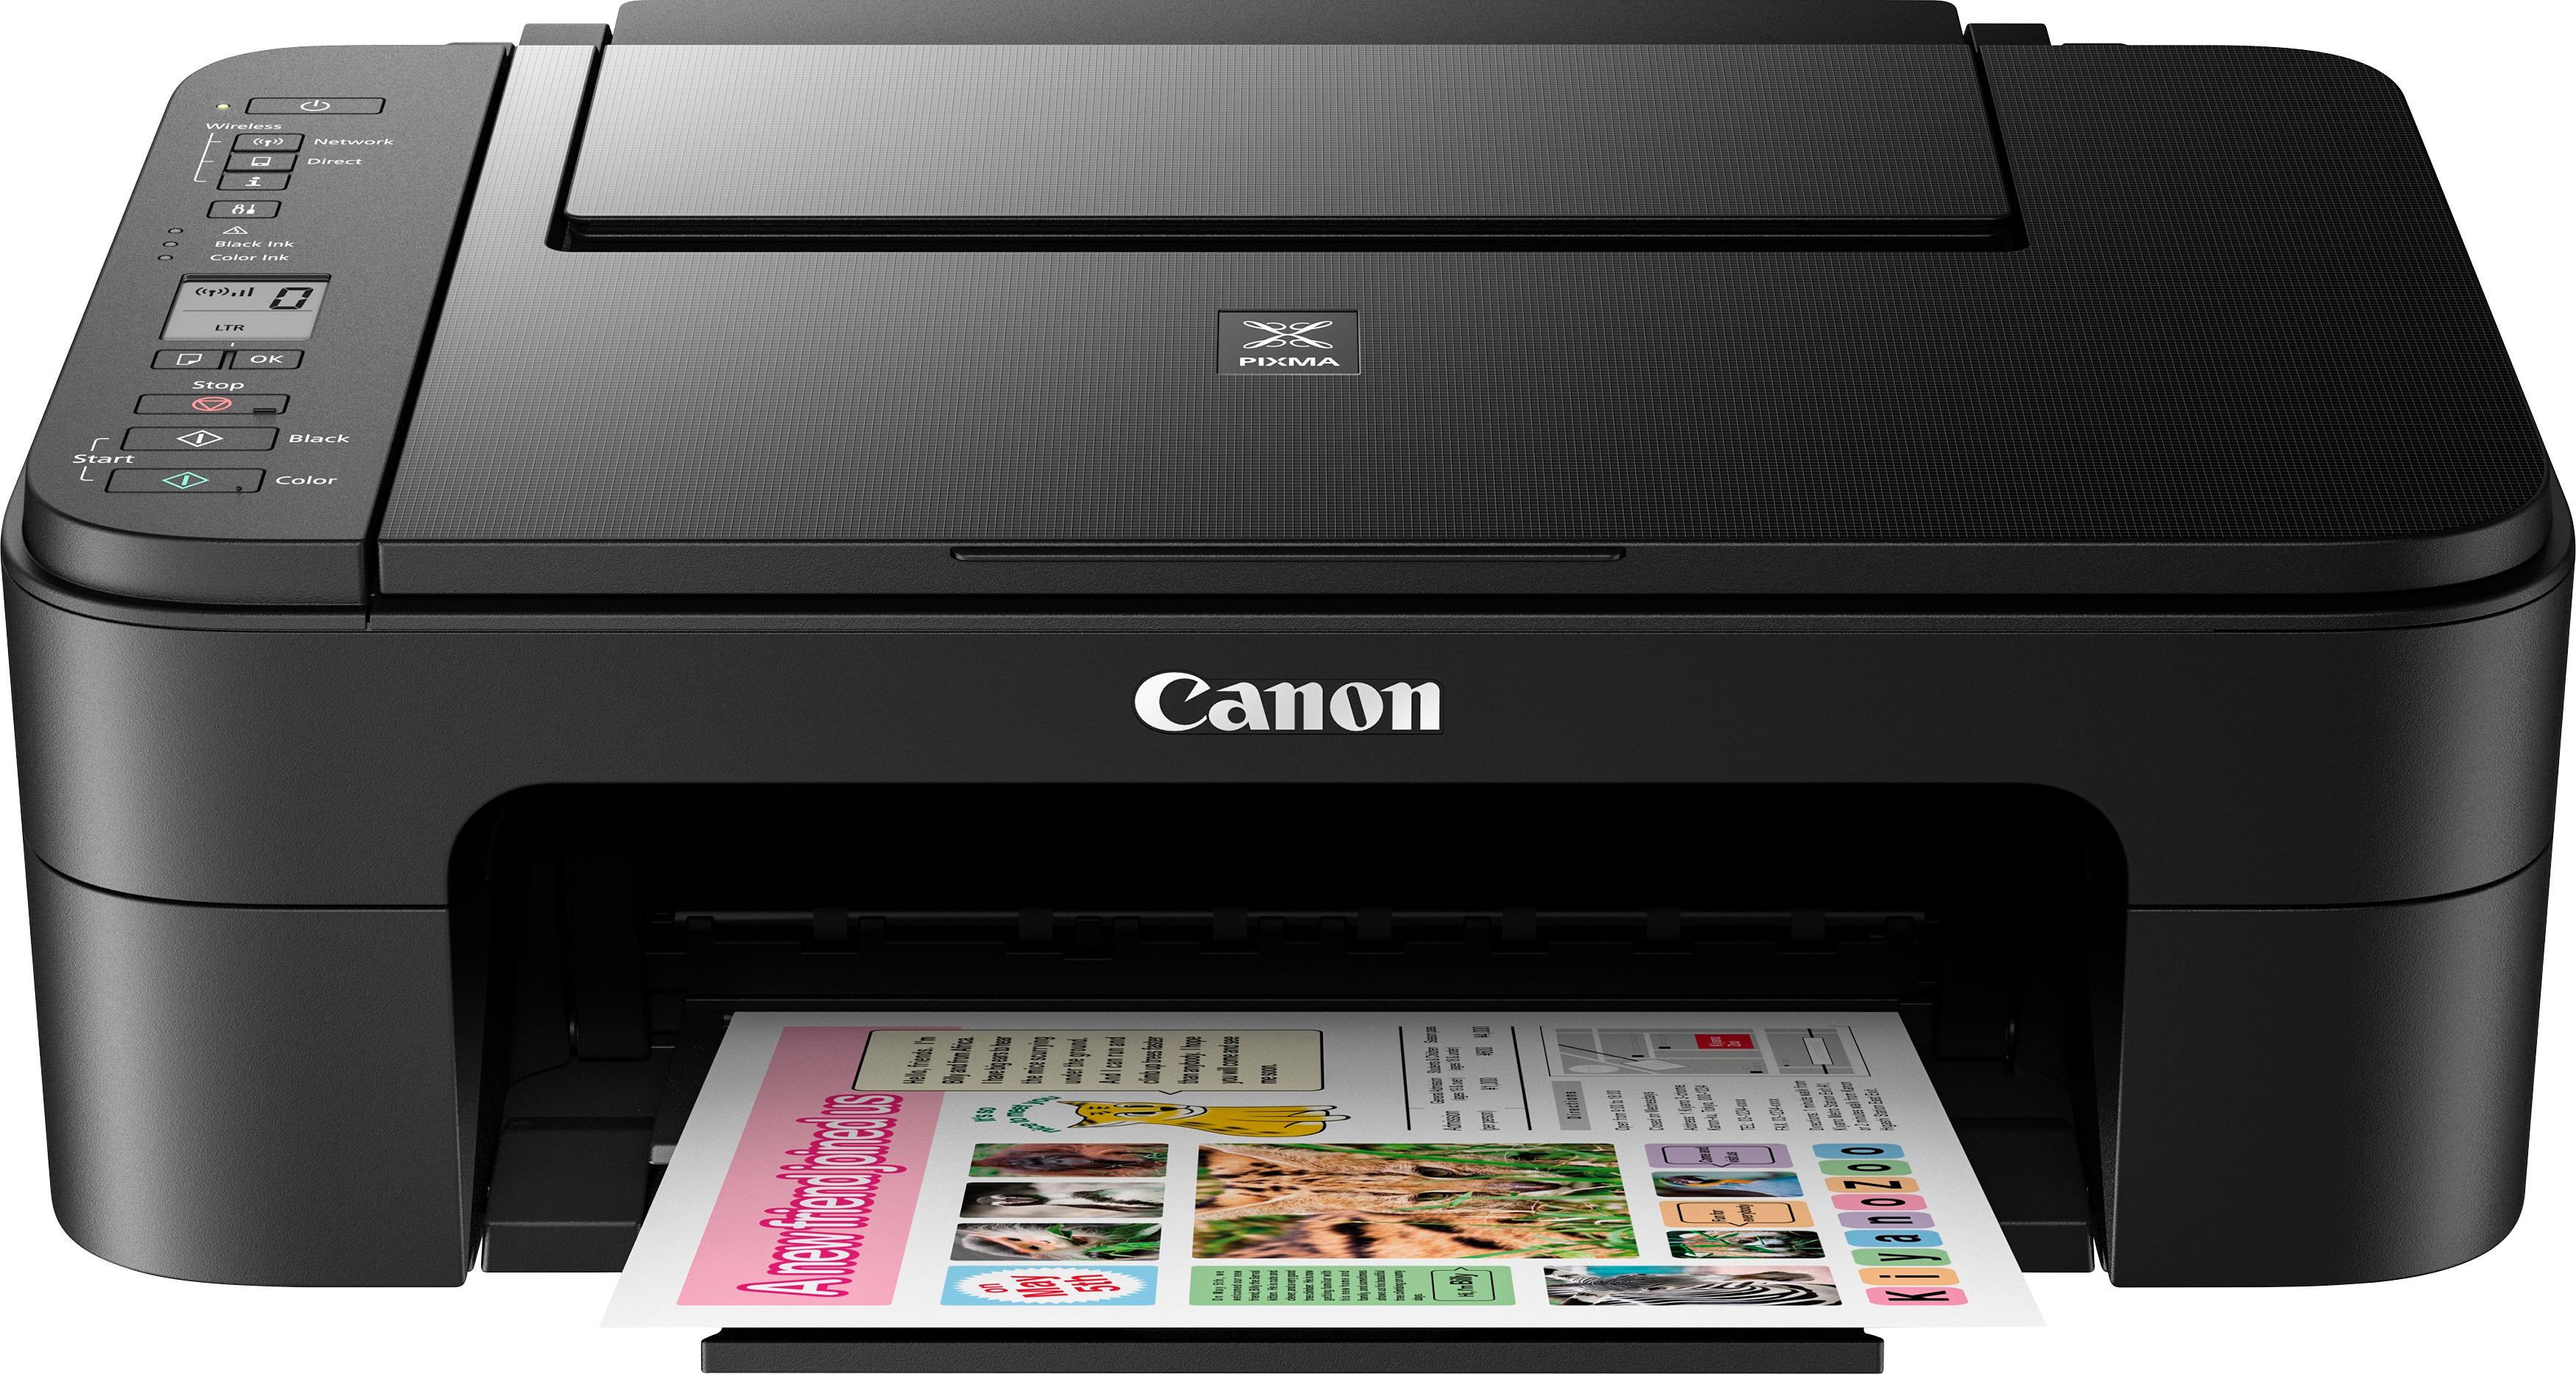 Canon - PIXMA TS3120 Wireless All-In-One Printer - Black